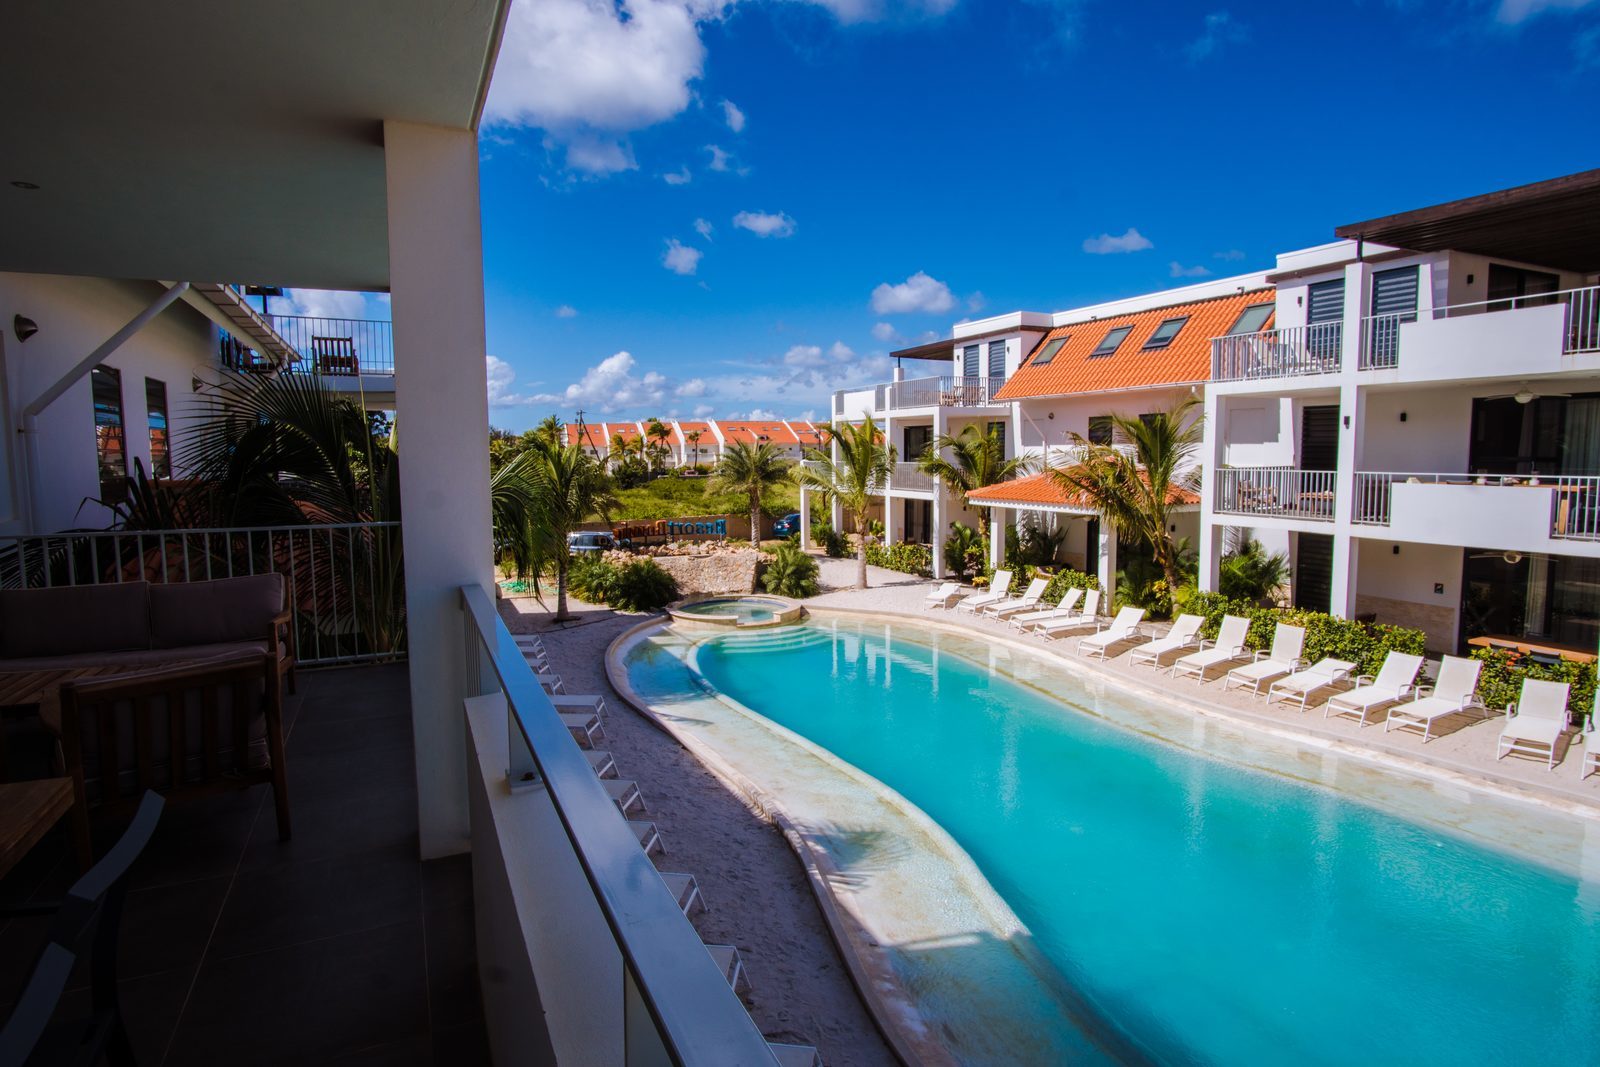 Jede der Ferienwohnungen im Resort Bonaire verfügt über eine Terrasse, von der aus Sie den Swimmingpool überblicken können.